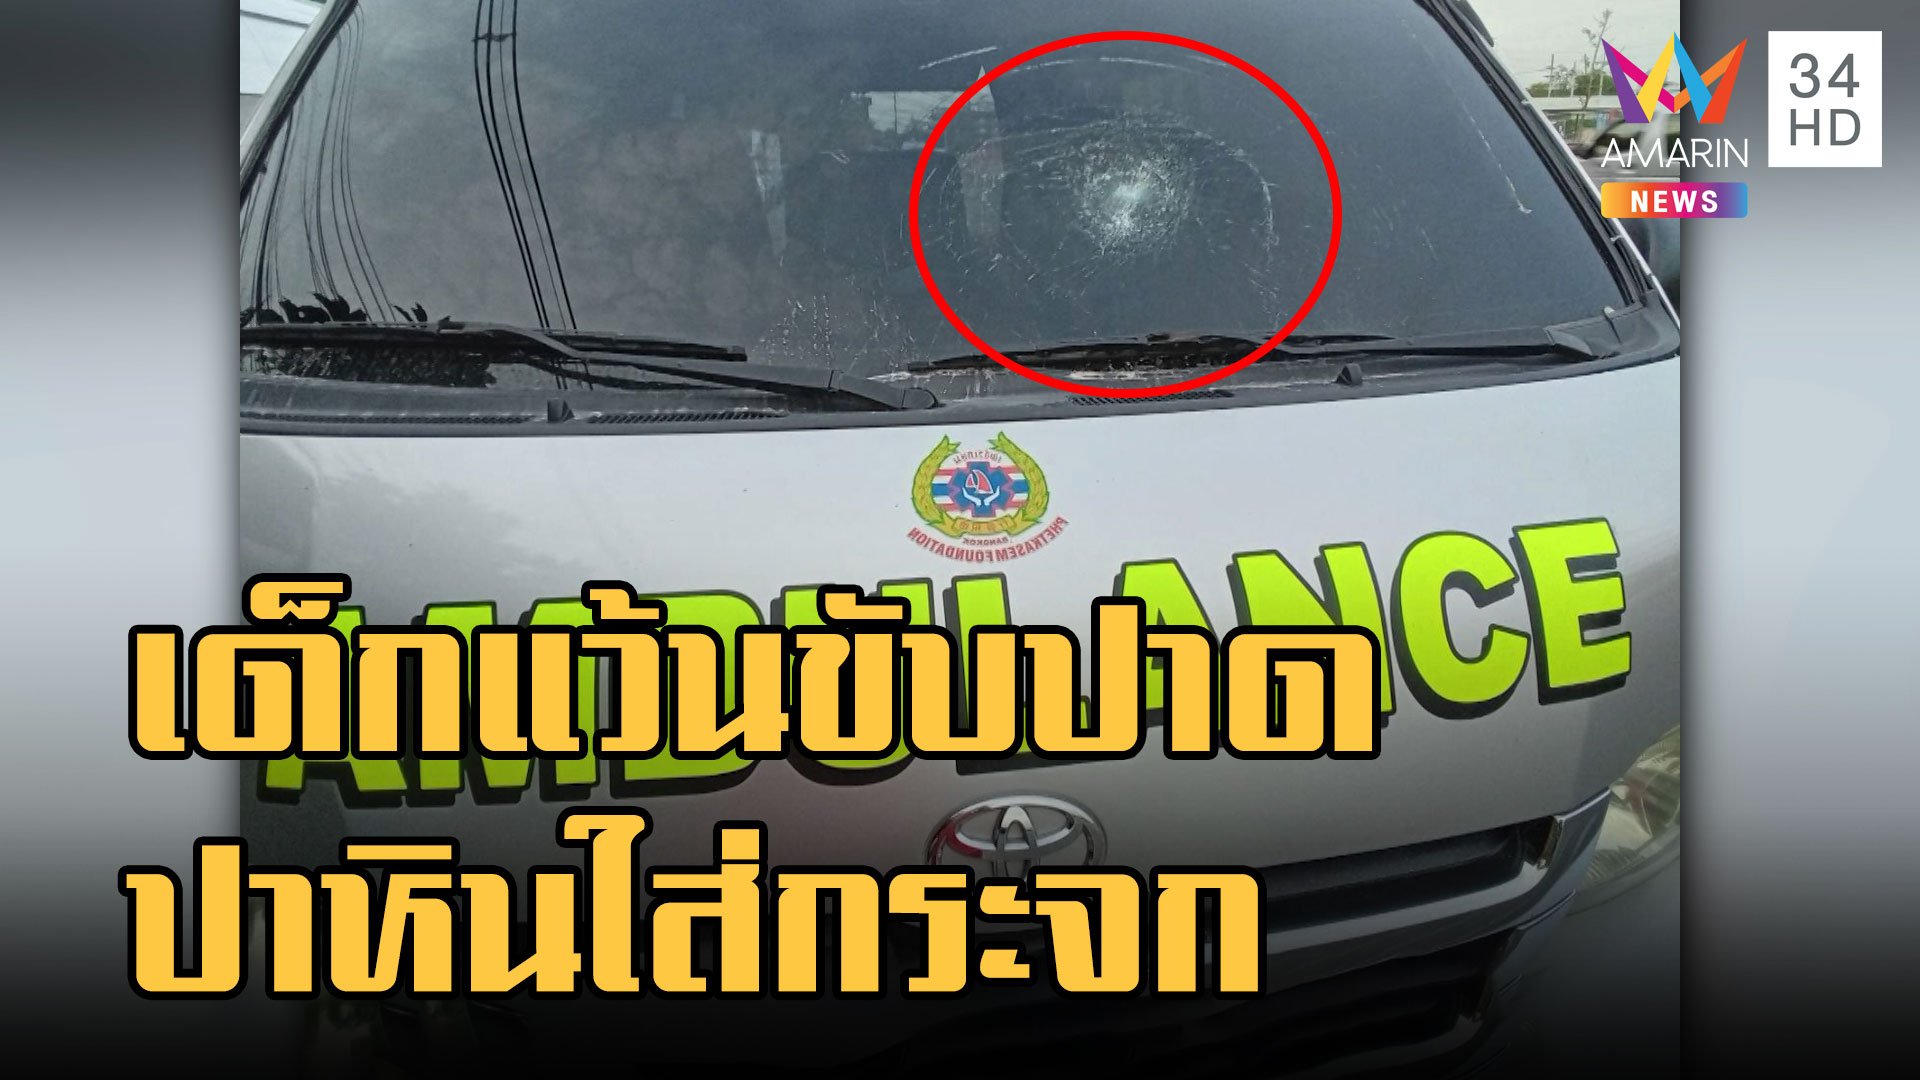 แก๊ง จยย.ซิ่งขับปาด ปาหินใส่กระจกรถกู้ภัย | ข่าวเที่ยงอมรินทร์ | 26 ม.ค. 66 | AMARIN TVHD34